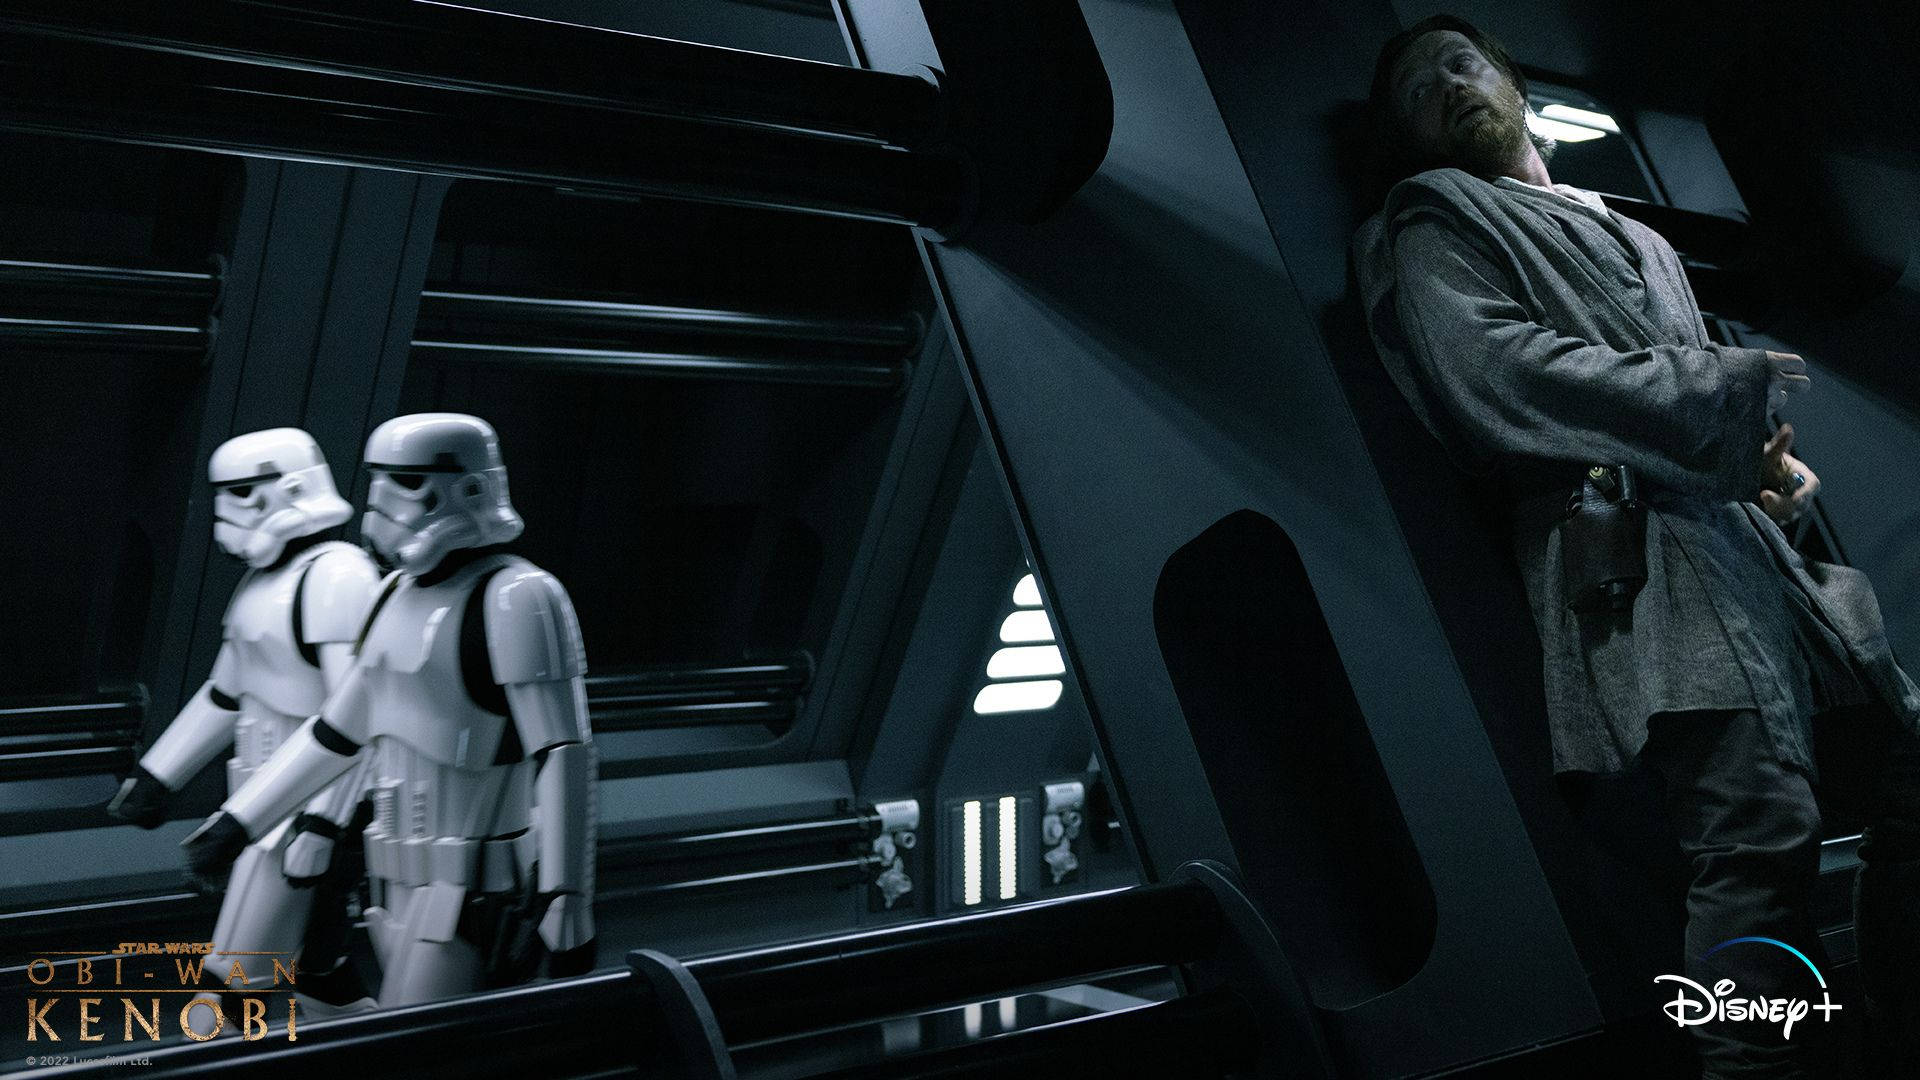 Obi-wan Kenobi Evades Stormtroopers In Hideout Background